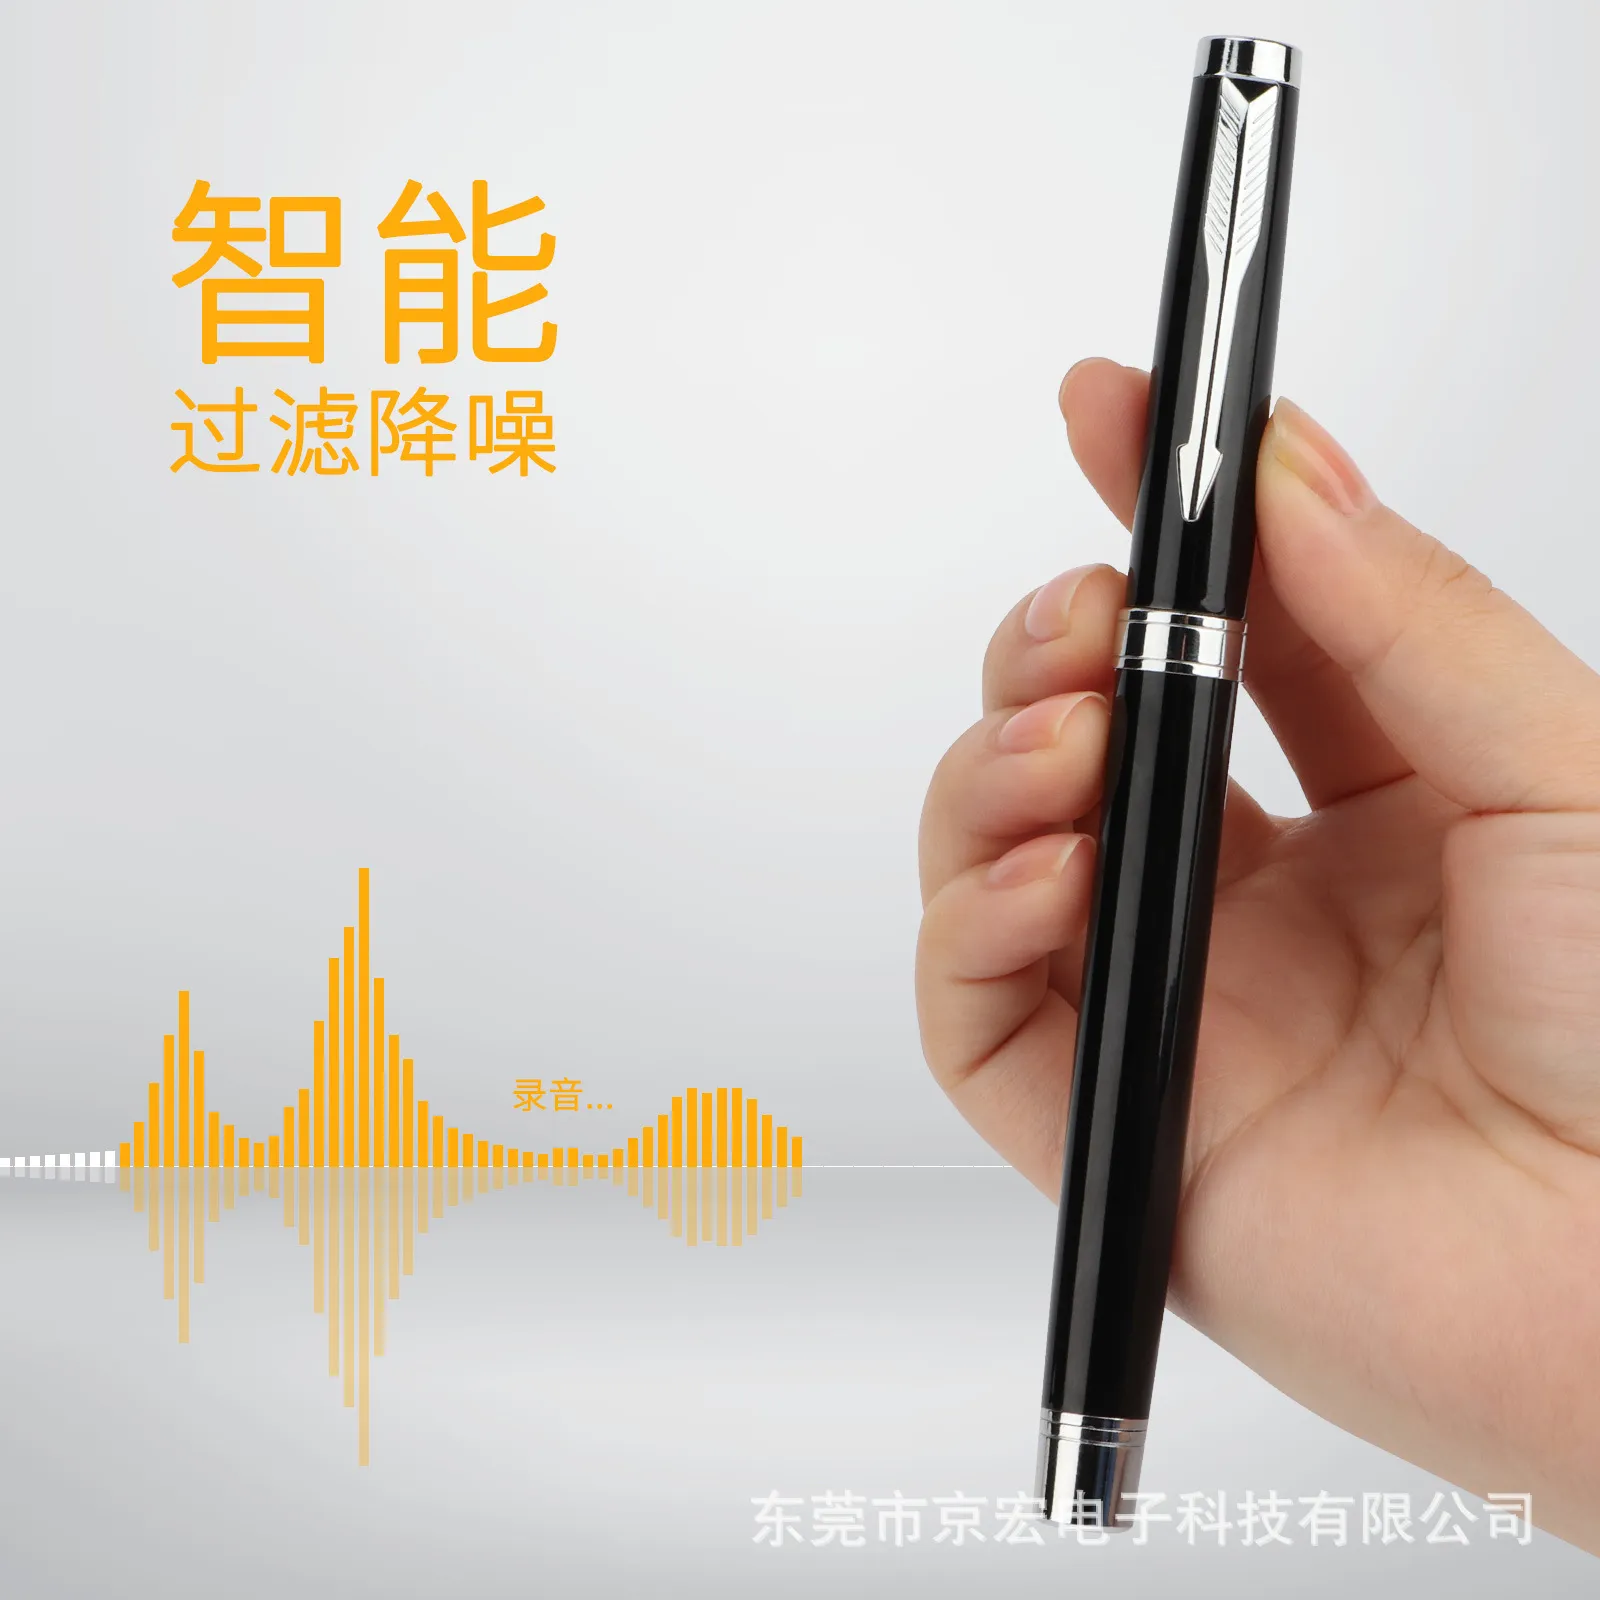 새로운 펜 모양 녹음 펜 고화질 장거리 노이즈 감소 기록 음성 제어 녹음 컨퍼런스 클래스 녹음 펜